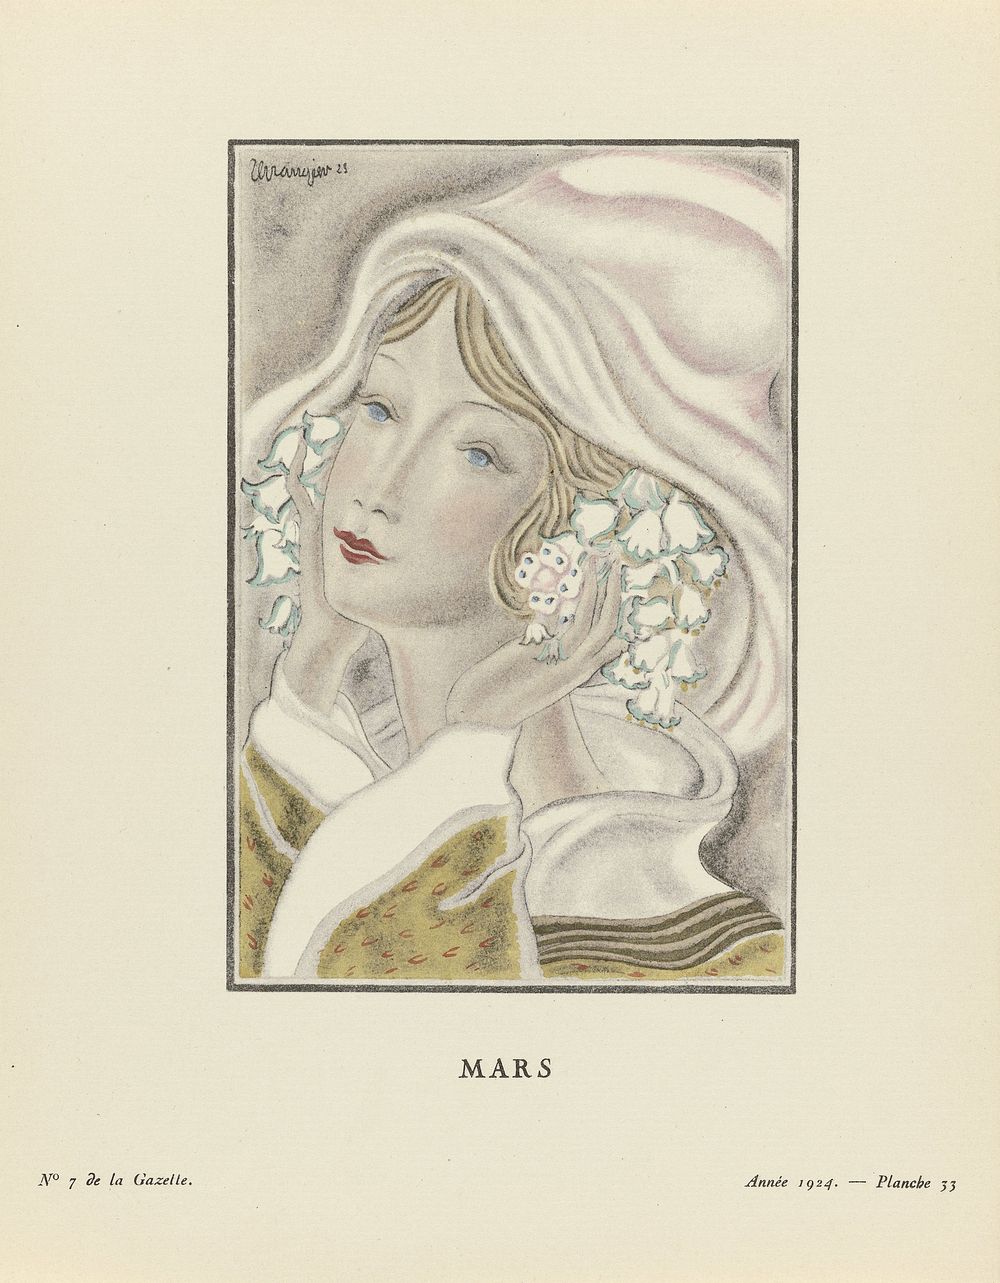 Gazette du Bon Ton. Art- Modes & Frivolités, 1924 - No. 7 : Mars (1924) by Grangier, anonymous, Lucien Vogel and Imprimerie…